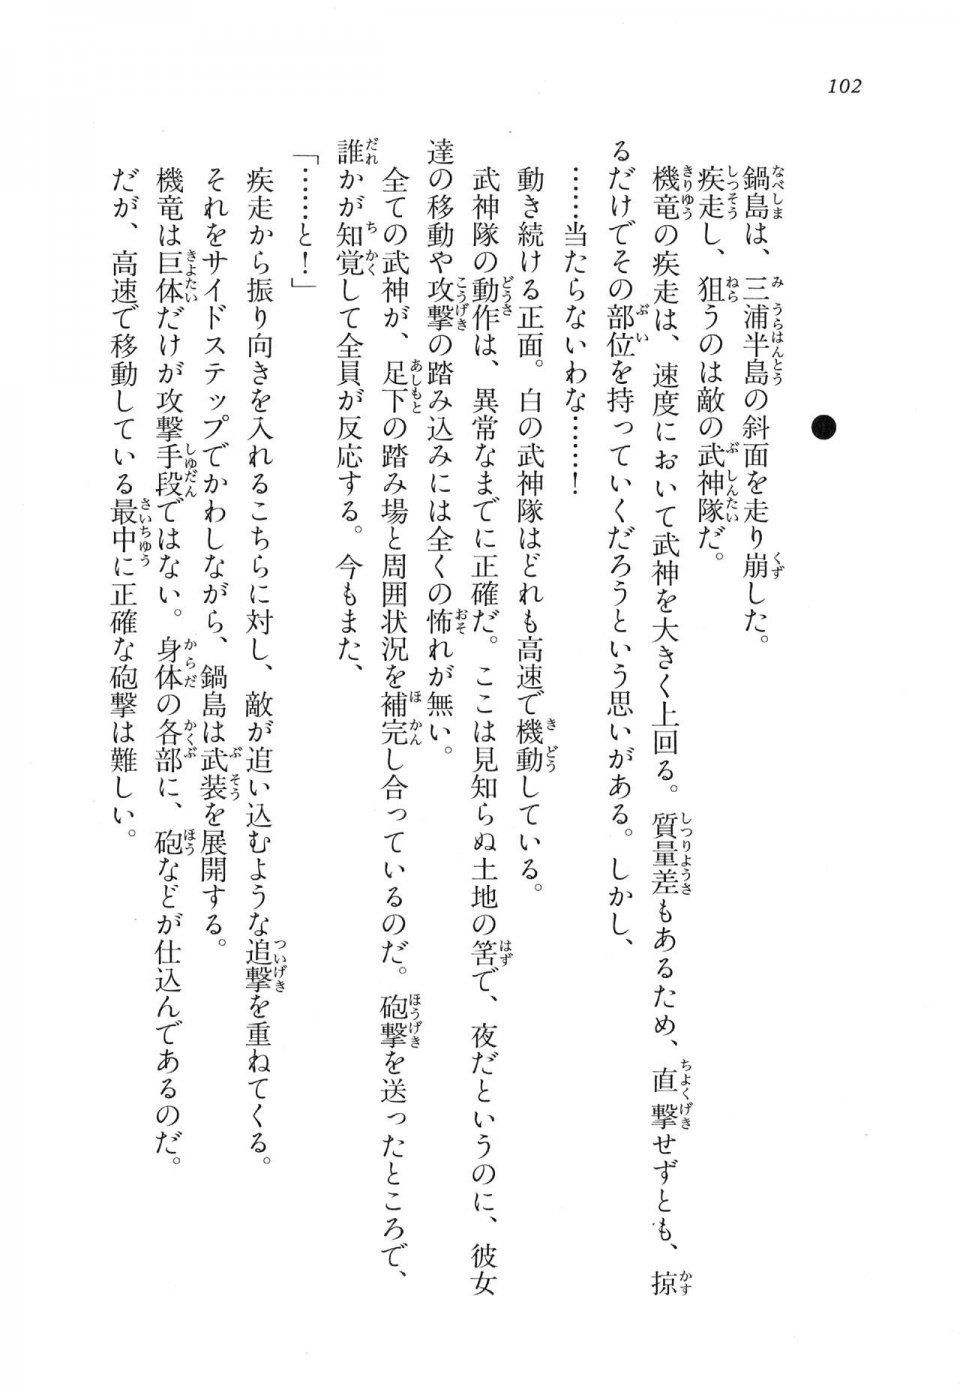 Kyoukai Senjou no Horizon LN Vol 17(7B) - Photo #102